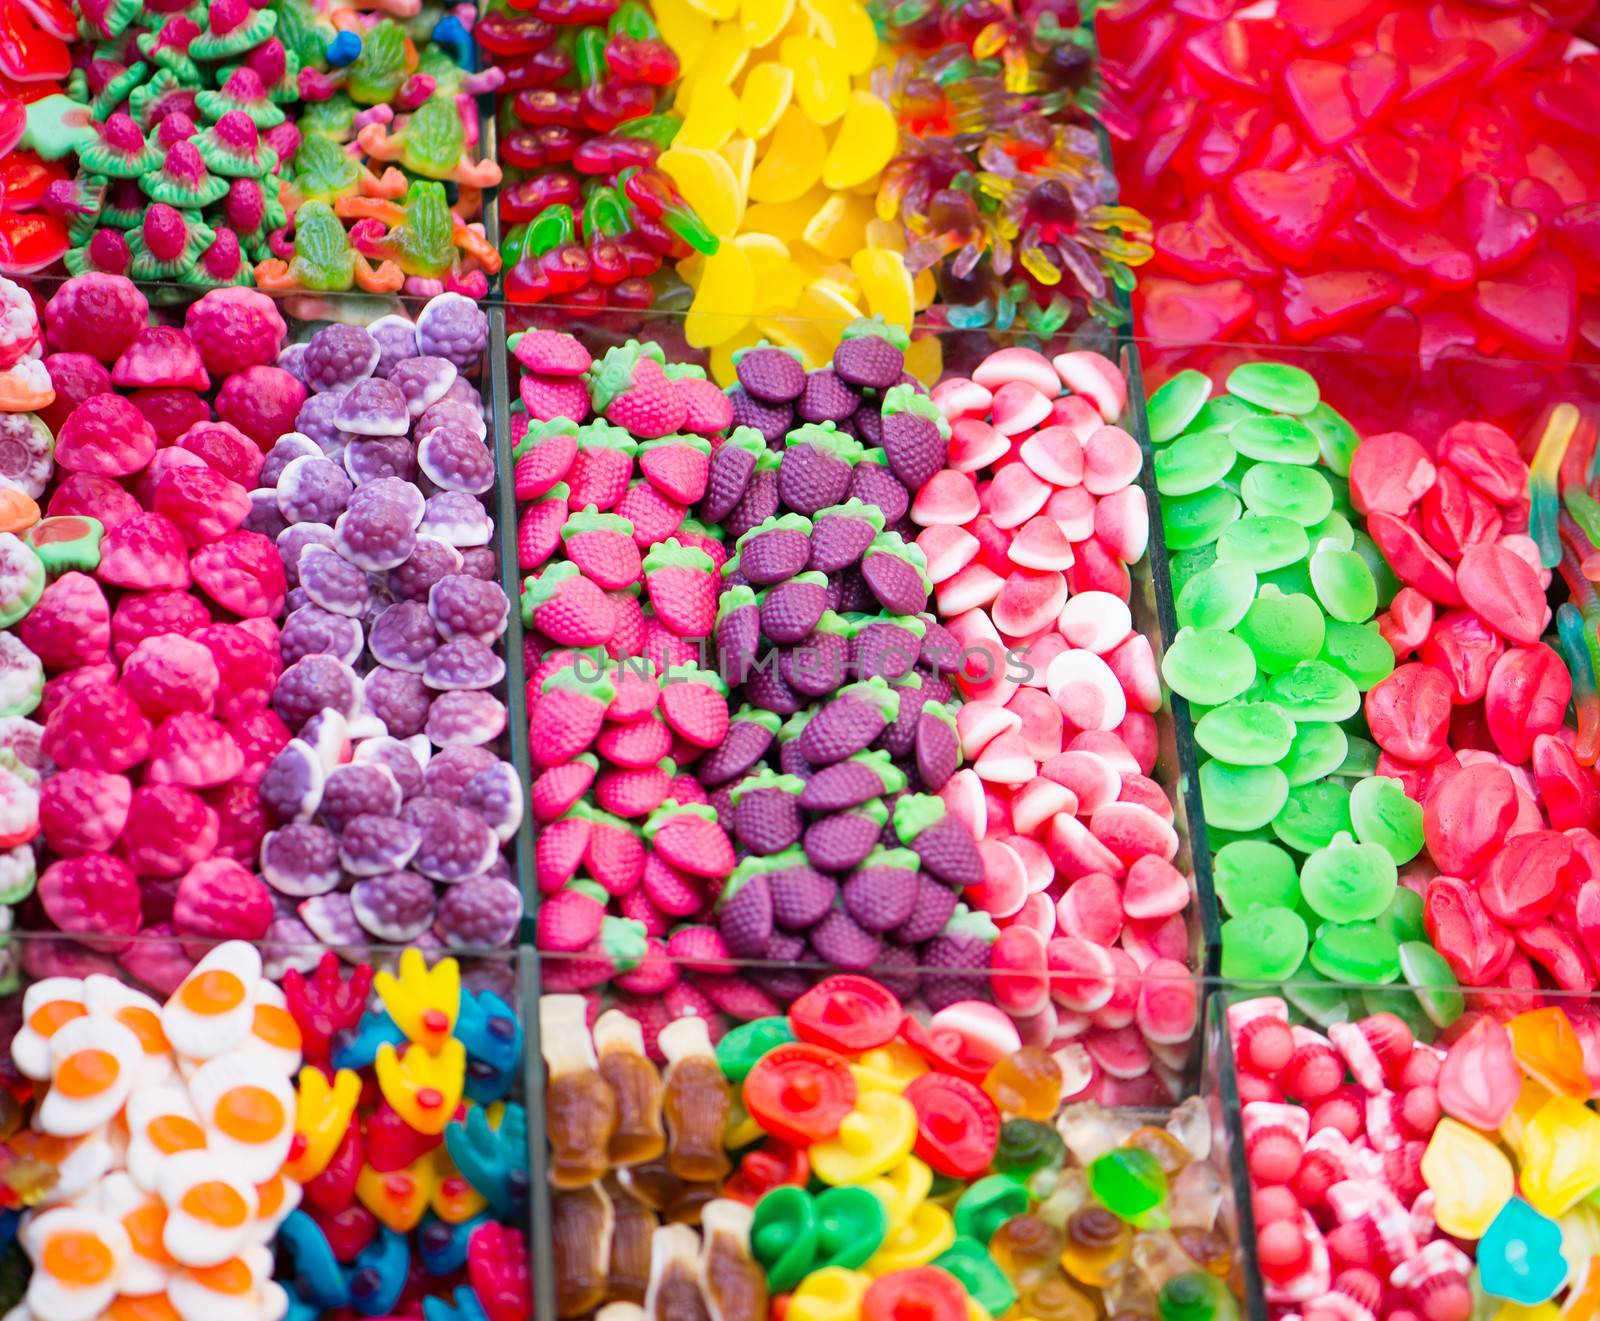 Sweets of all colors by GekaSkr